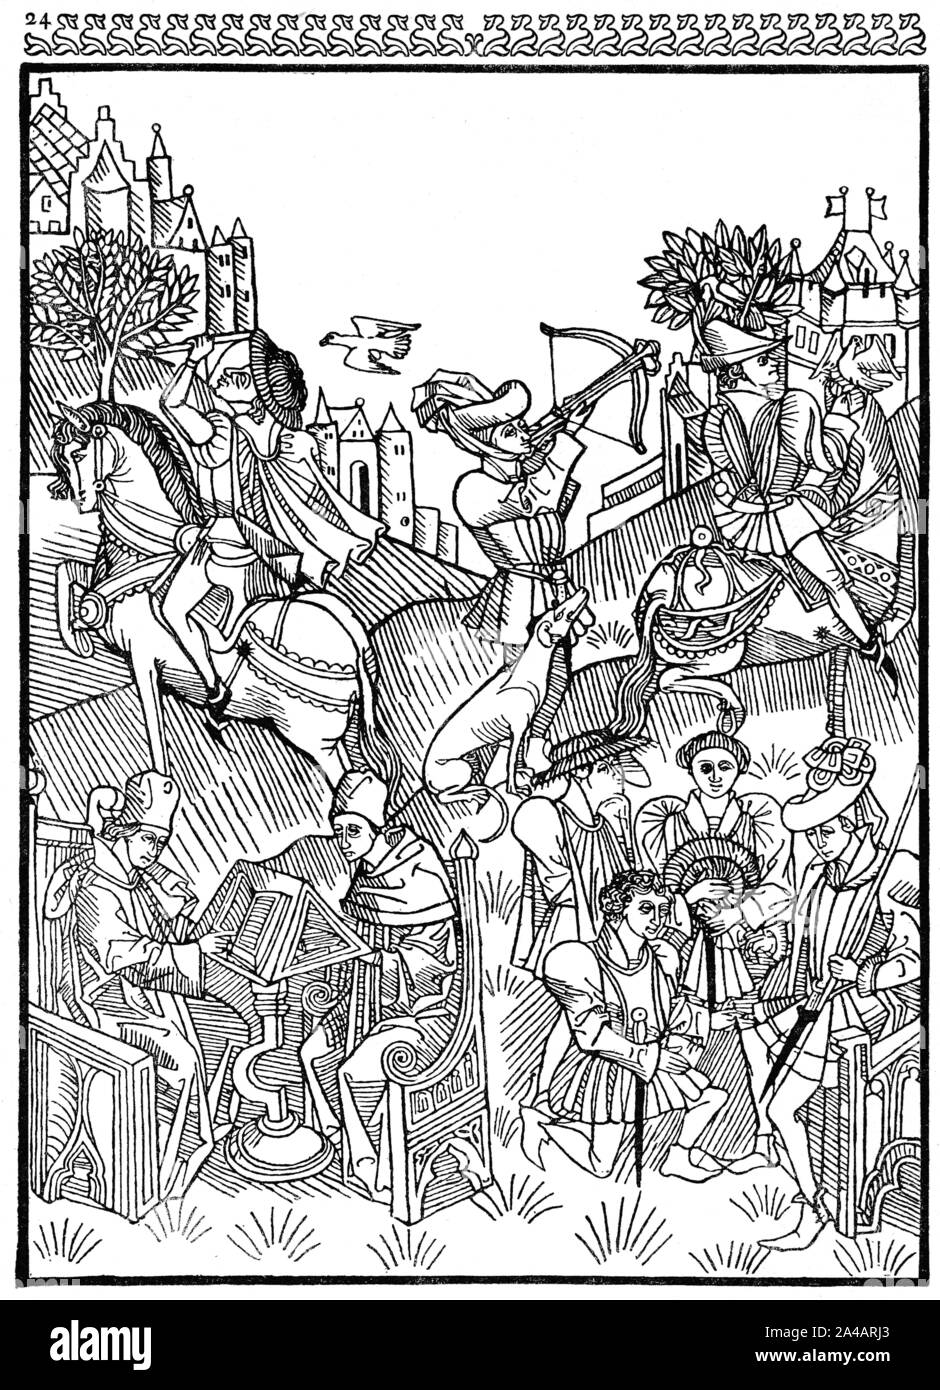 Mittelalterliches Leben, Holzschnitt, Einfluss der Planeten, links zwei Gelehrten am Schreibtisch, rechts Ritterschaft, Einwirkung der Planeten, 1470 Stockfoto